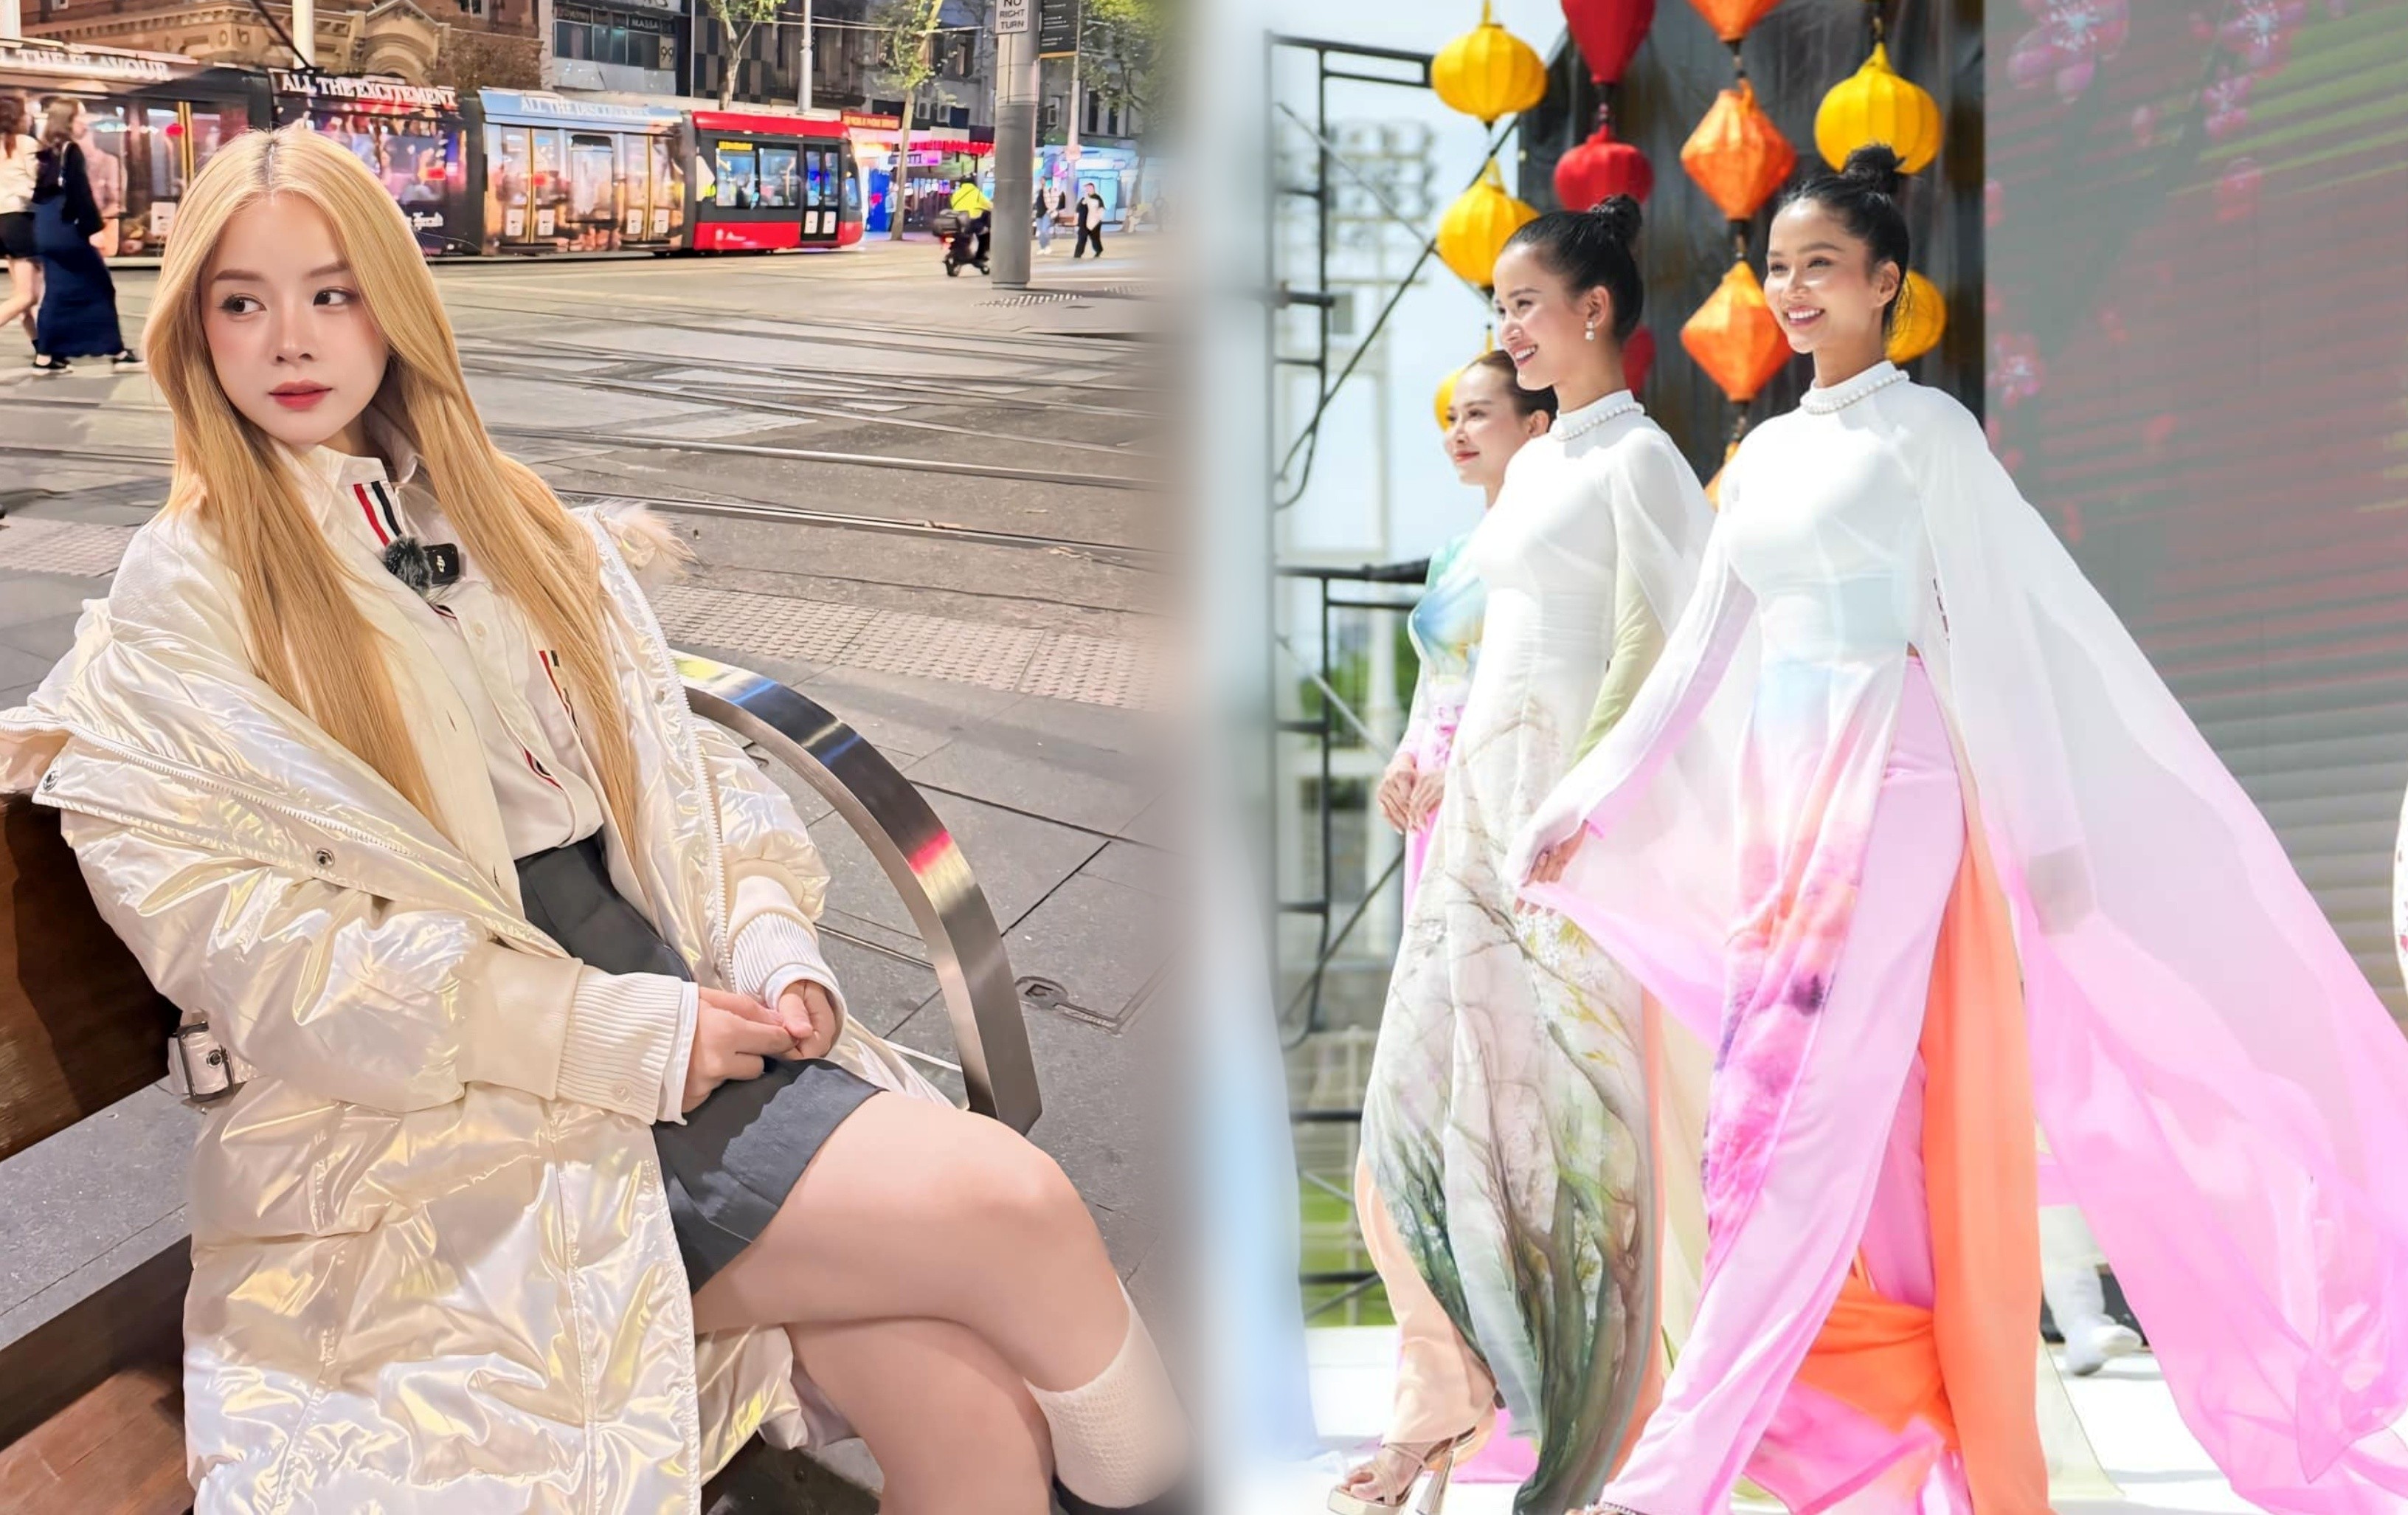 Sao Việt du lịch: DJ Mie hóa “búp bê” Tây ở xứ sở chuột túi, H’Hen Niê diện áo dài tại Osaka